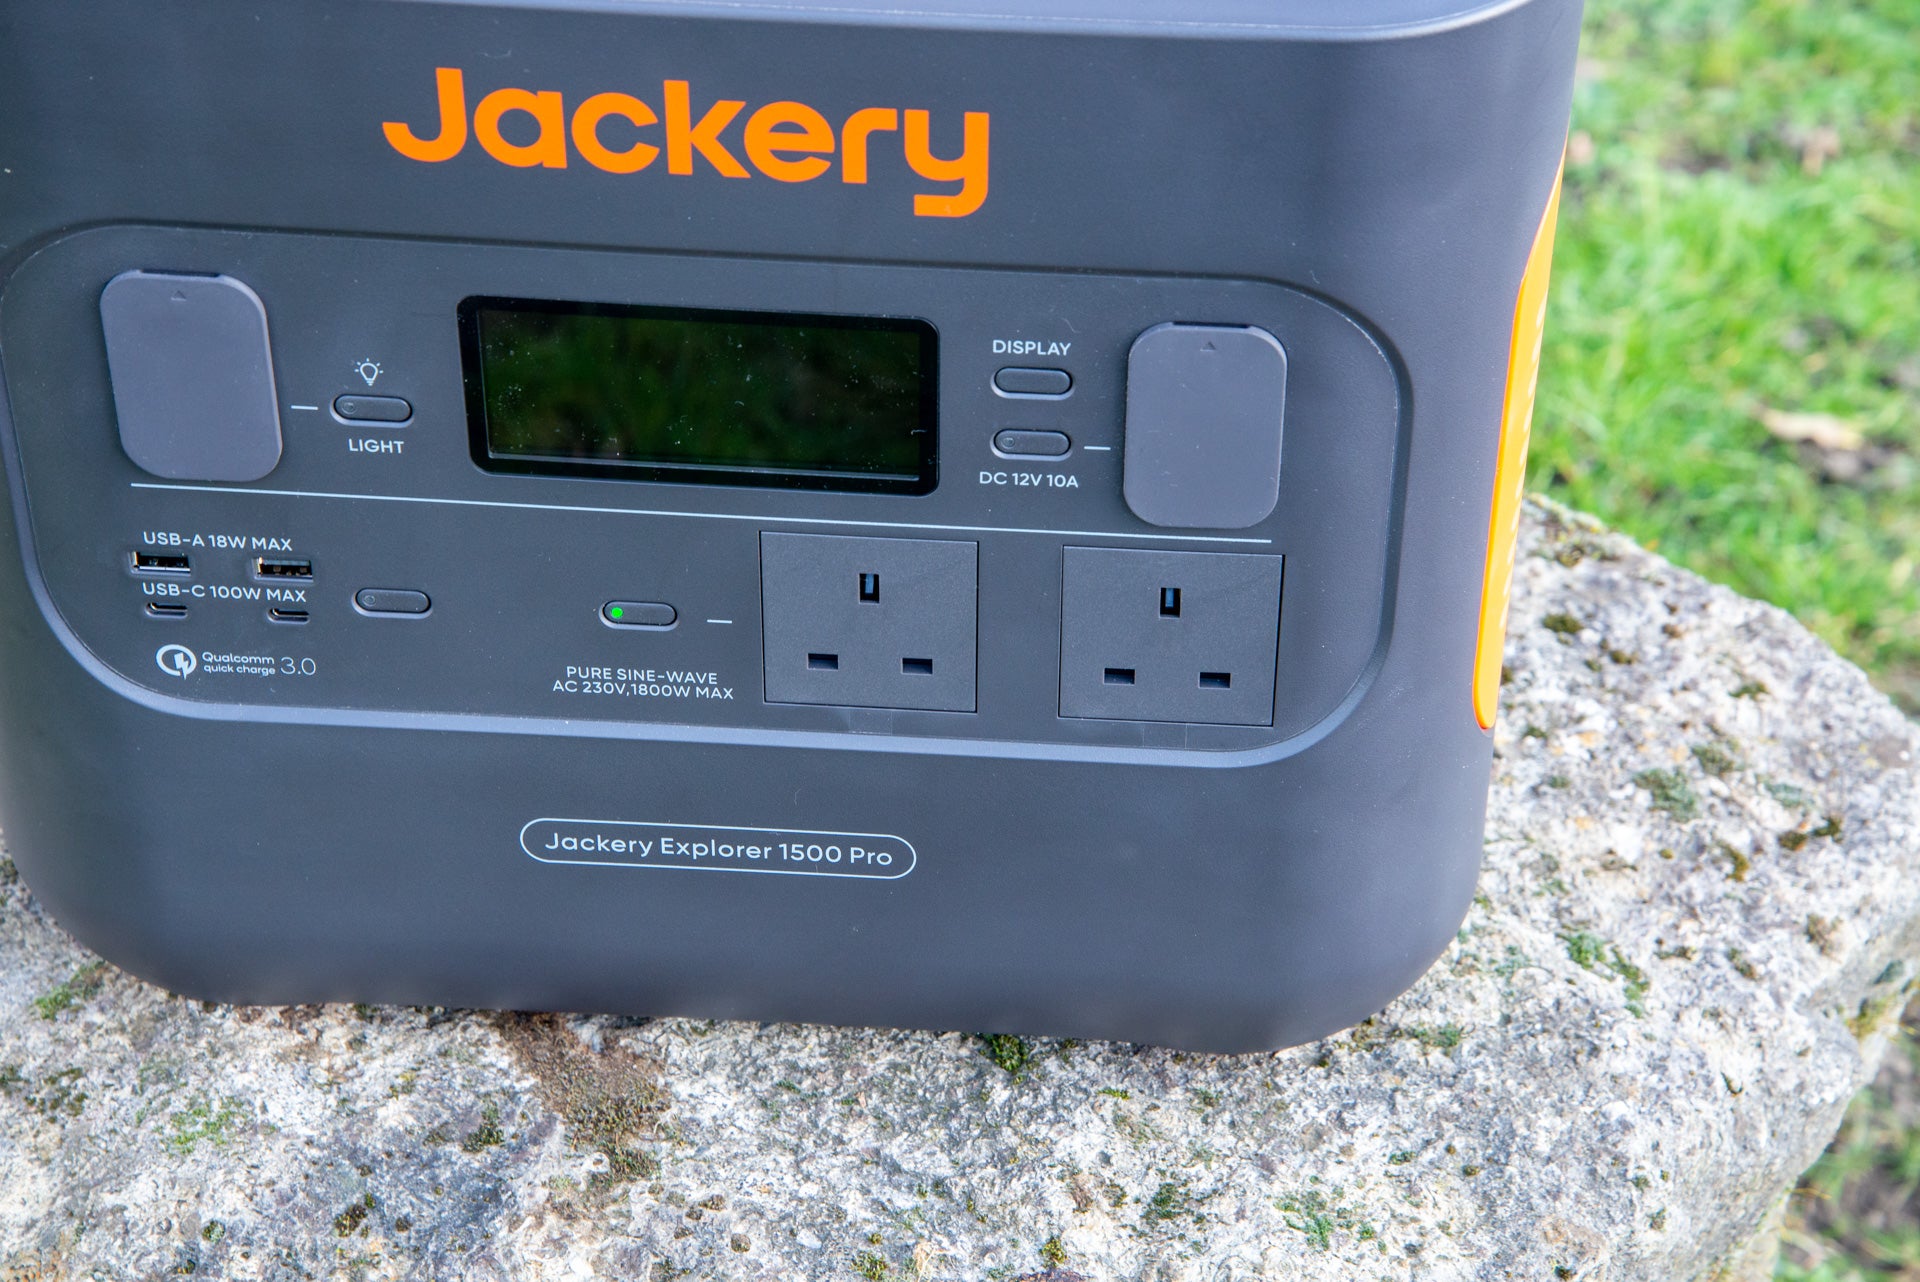 Jackery Explorer 1500 Pro UK plugs